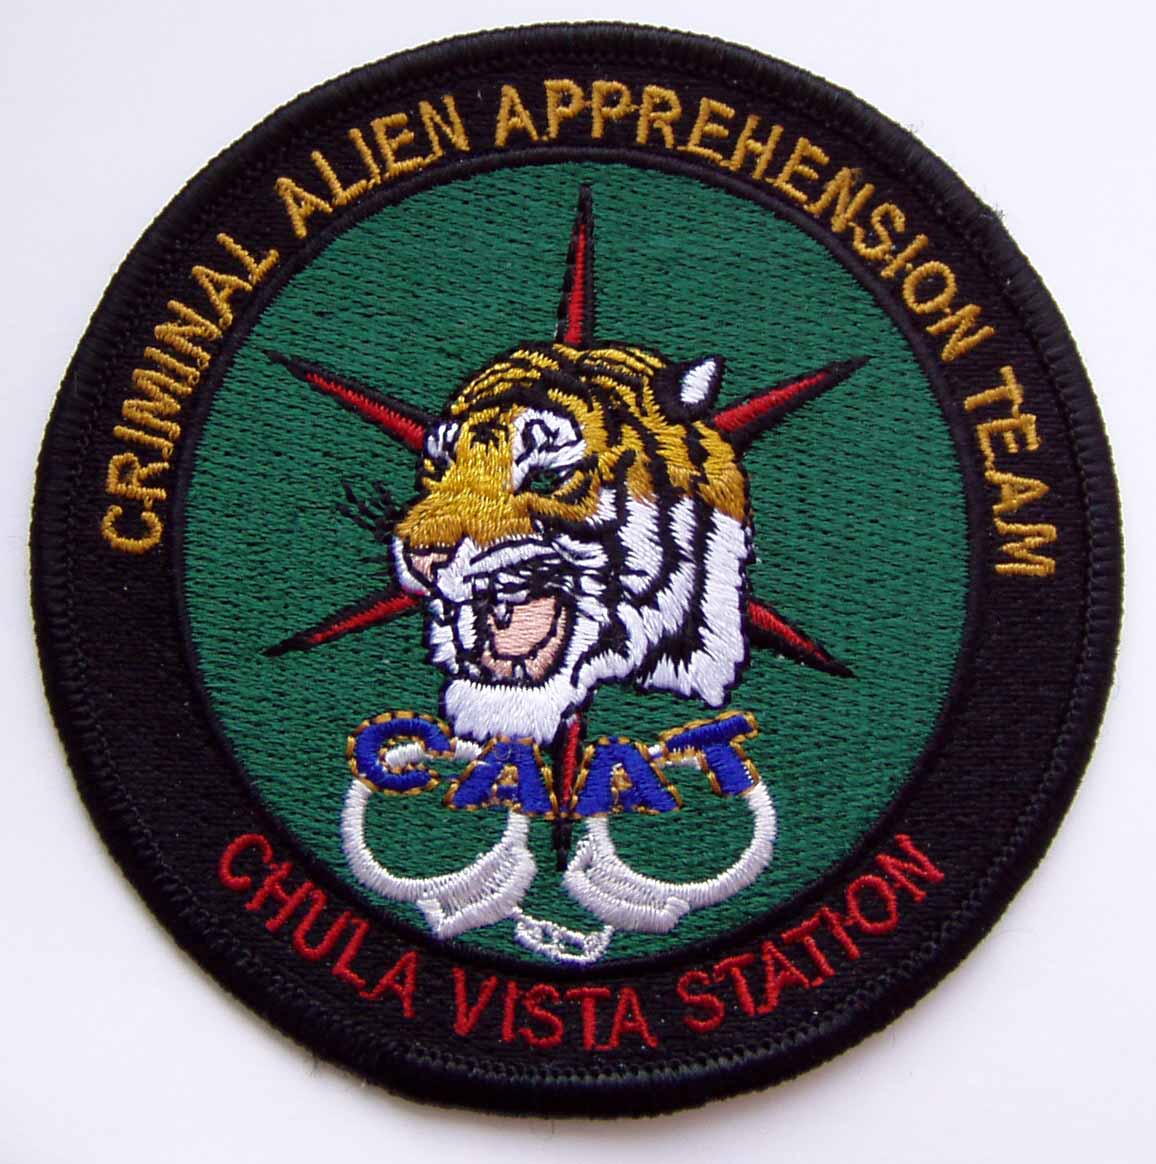 Chula Vista Station Criminal Alien Apprehension Team